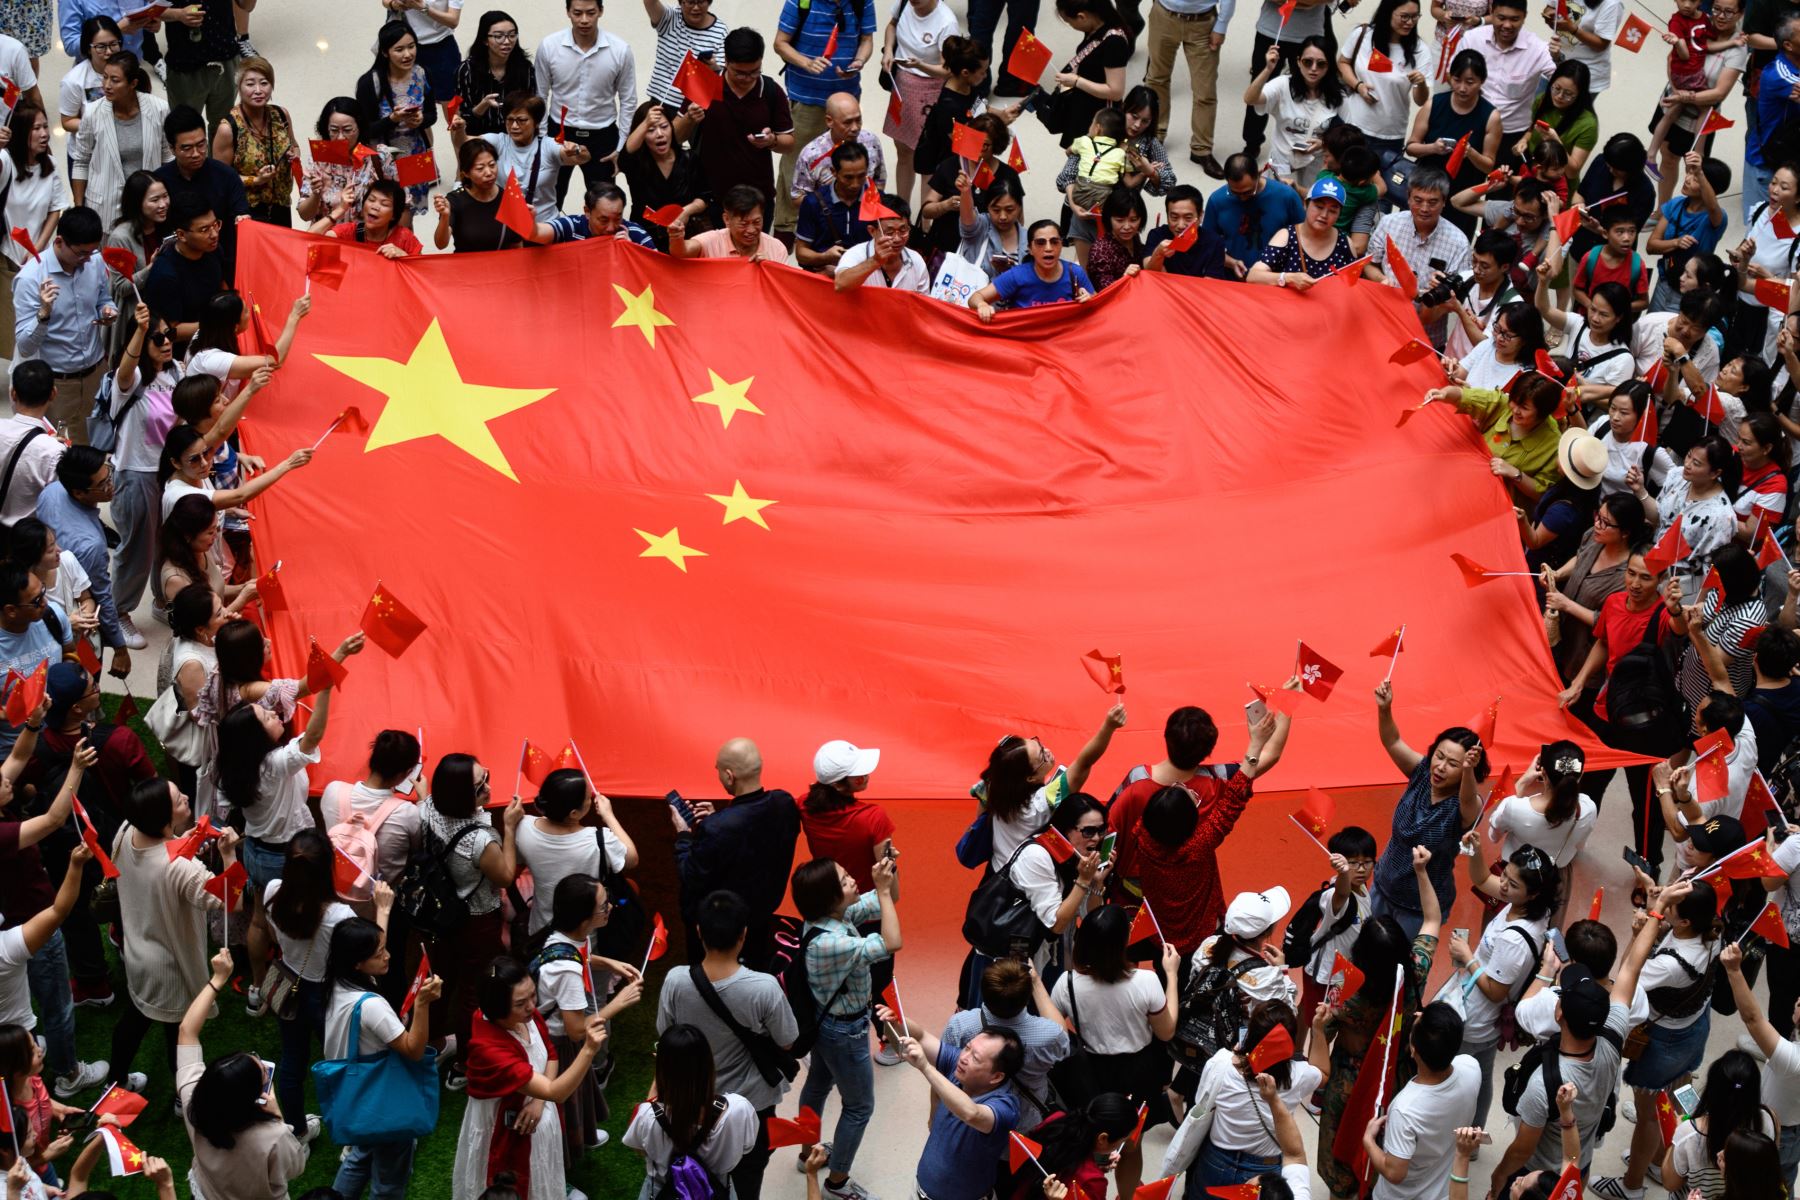 Pompeo acusó al régimen chino de mentir y manipular, lo culpó de haber encubierto los primeros brotes de la pandemia, de internar en campos a un millón de miembros de la minoría uigur y de aplastar las protestas en Hong Kong. Foto: AFP